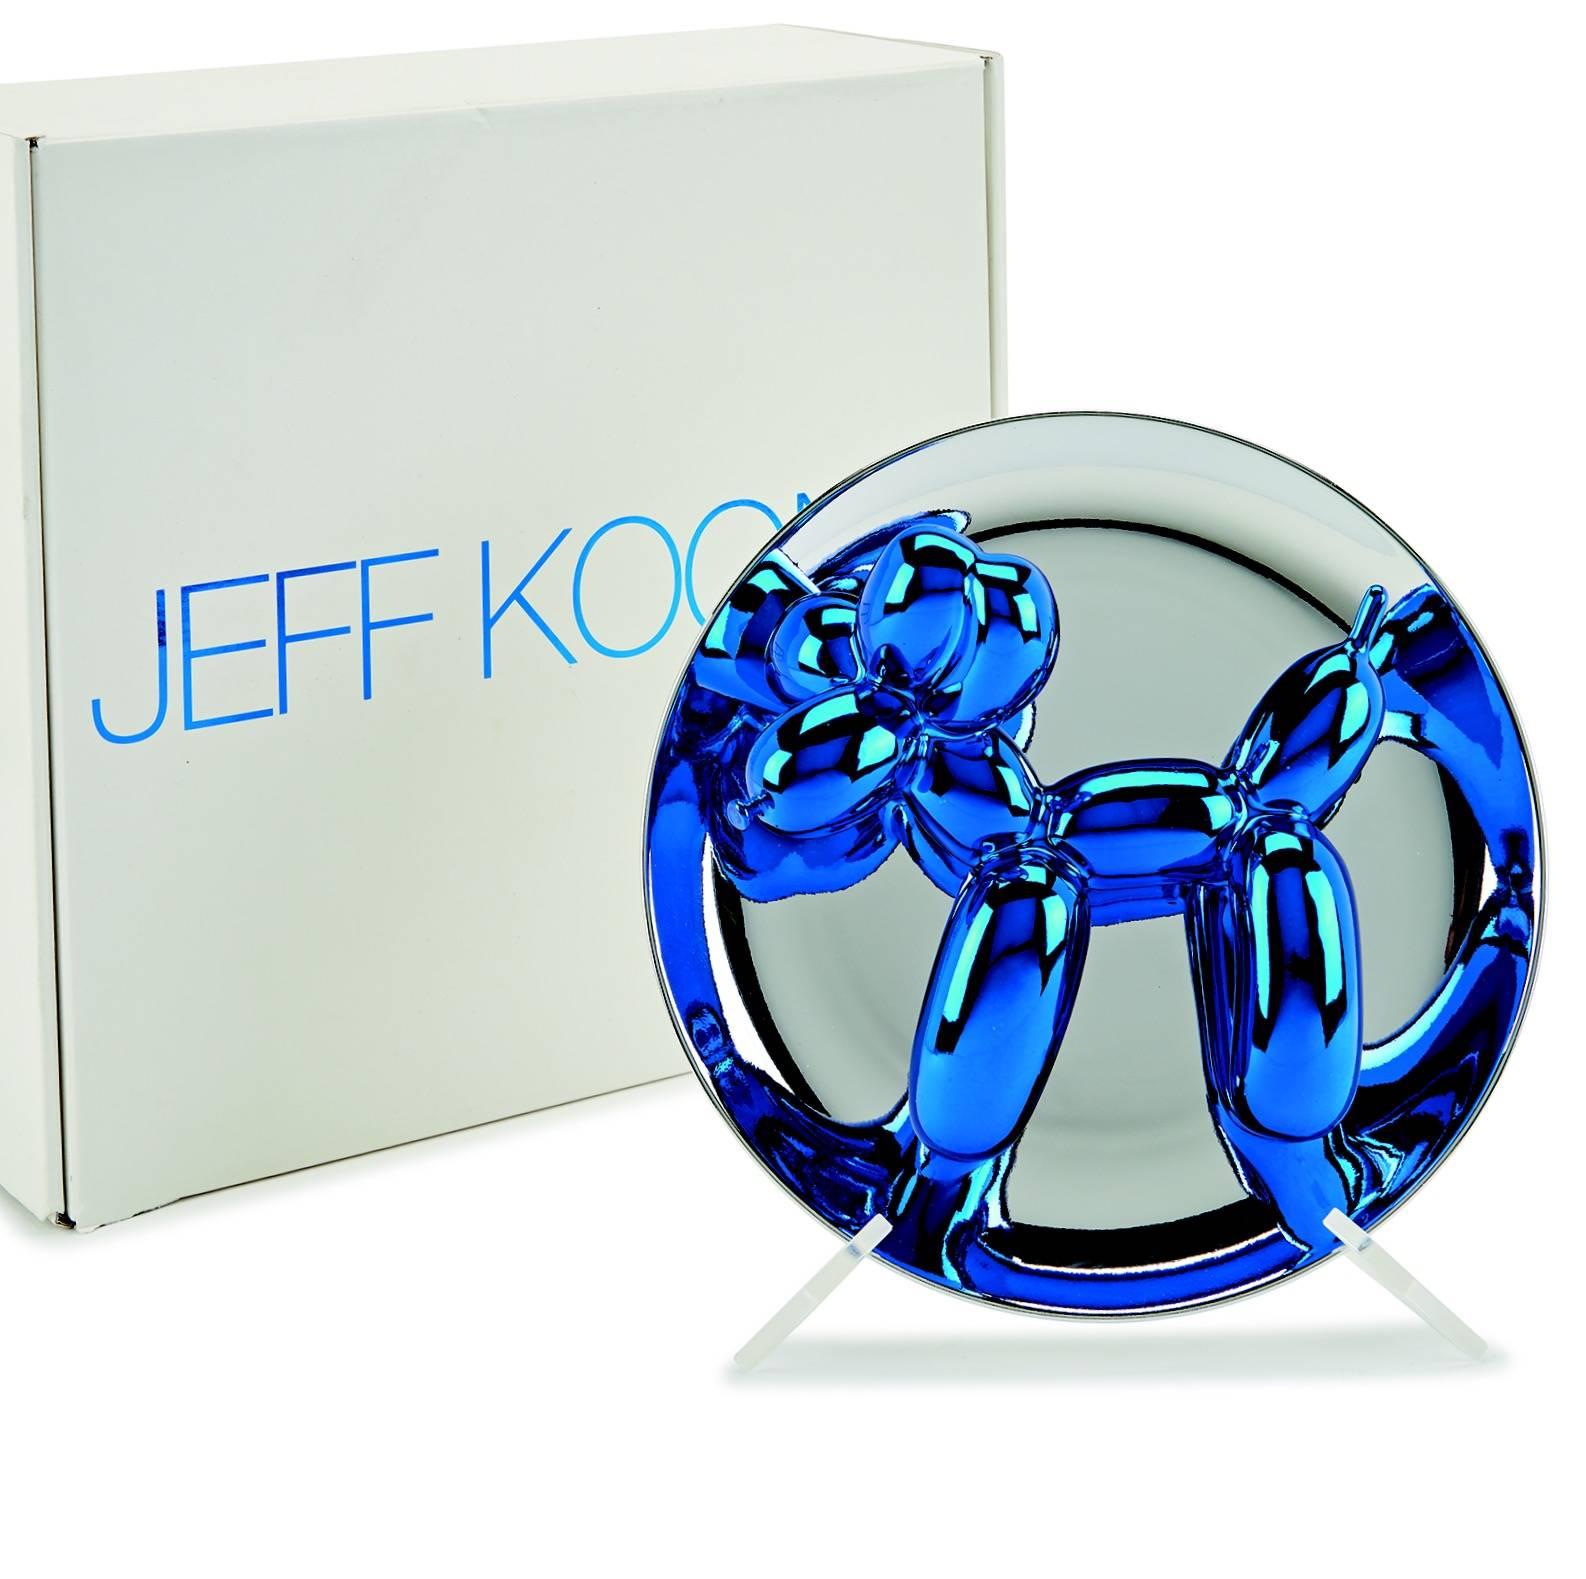 Jeff Koons Still-Life Sculpture - Balloon Dog (Blue) 2002